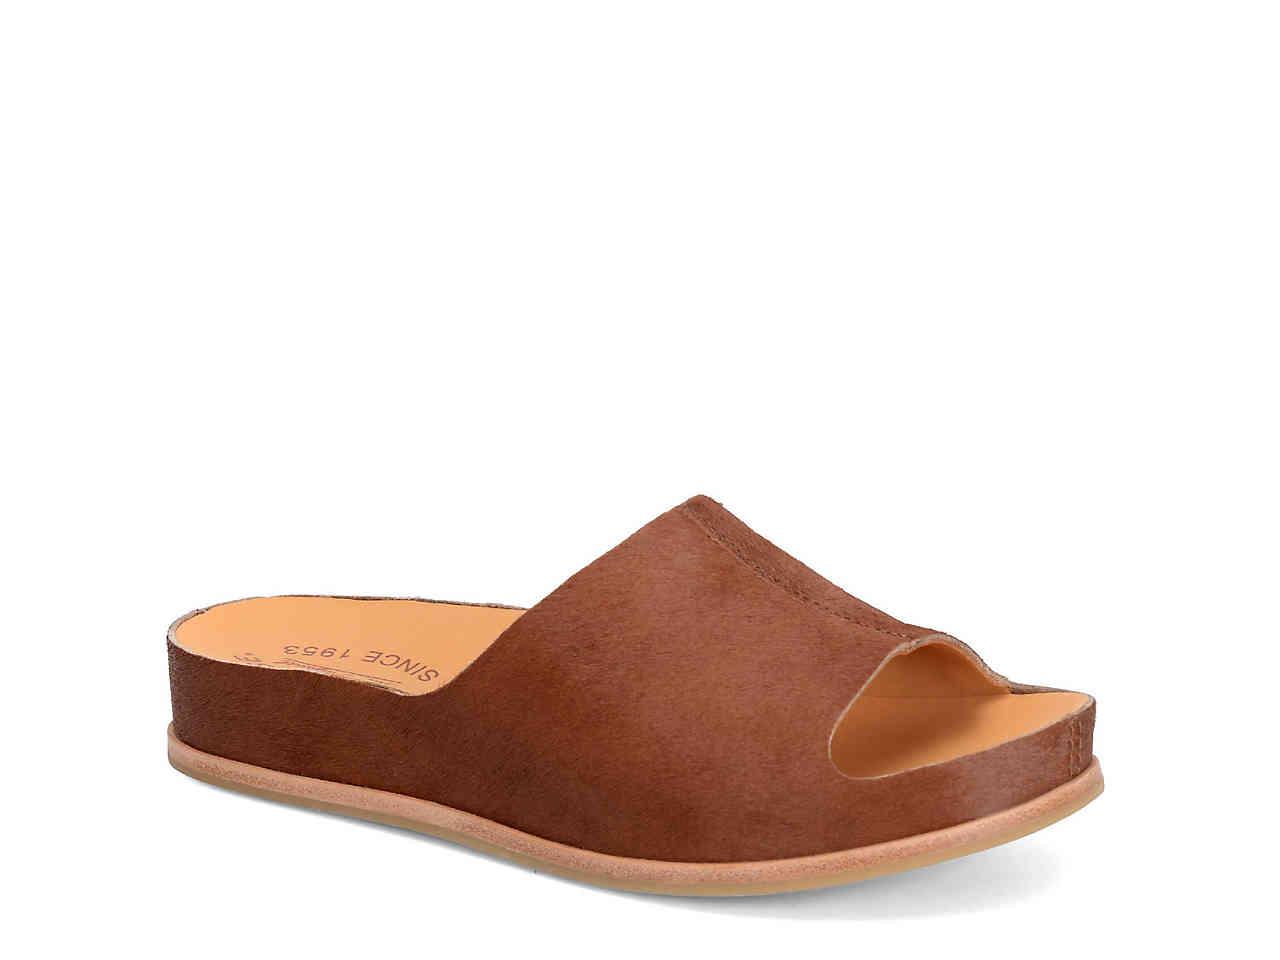 Kork-Ease Leather Tutsi Slide Sandal in Brown - Lyst